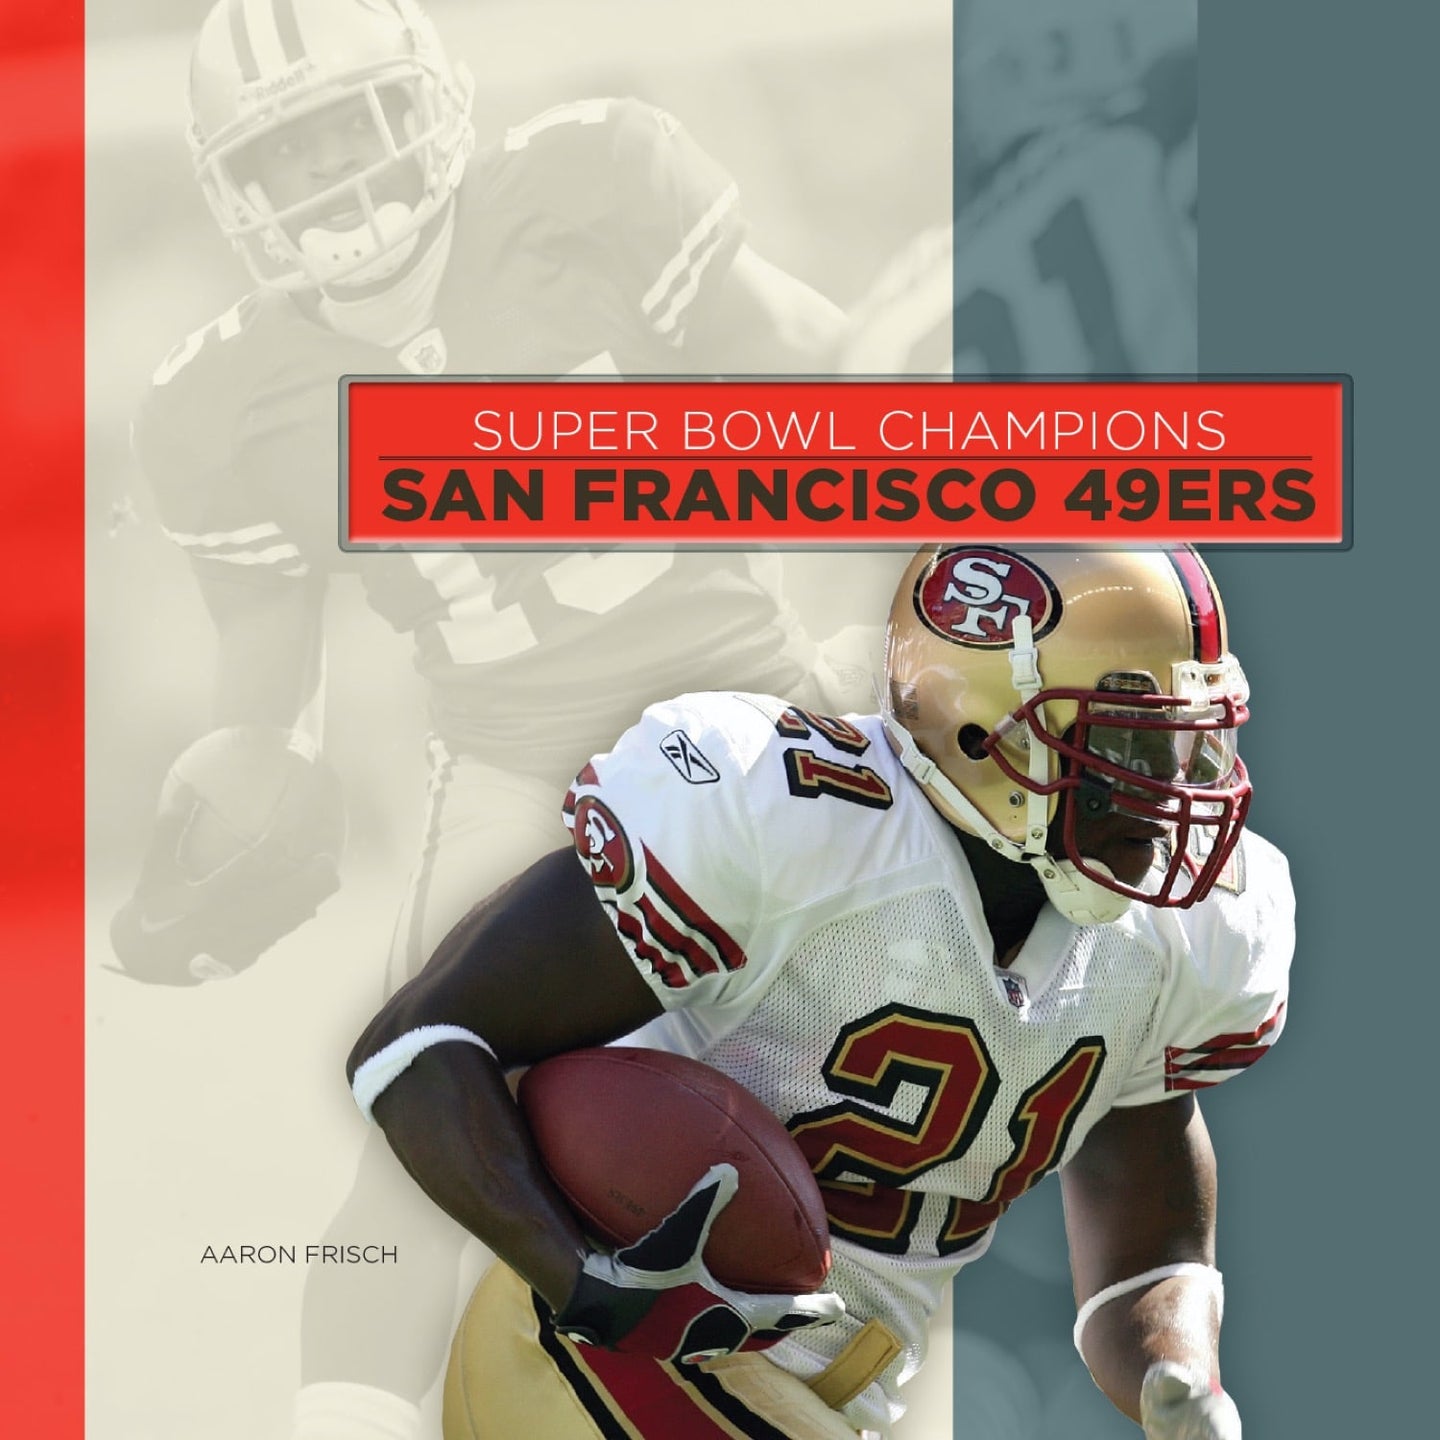 Super Bowl Champions: San Francisco 49ers [Book]